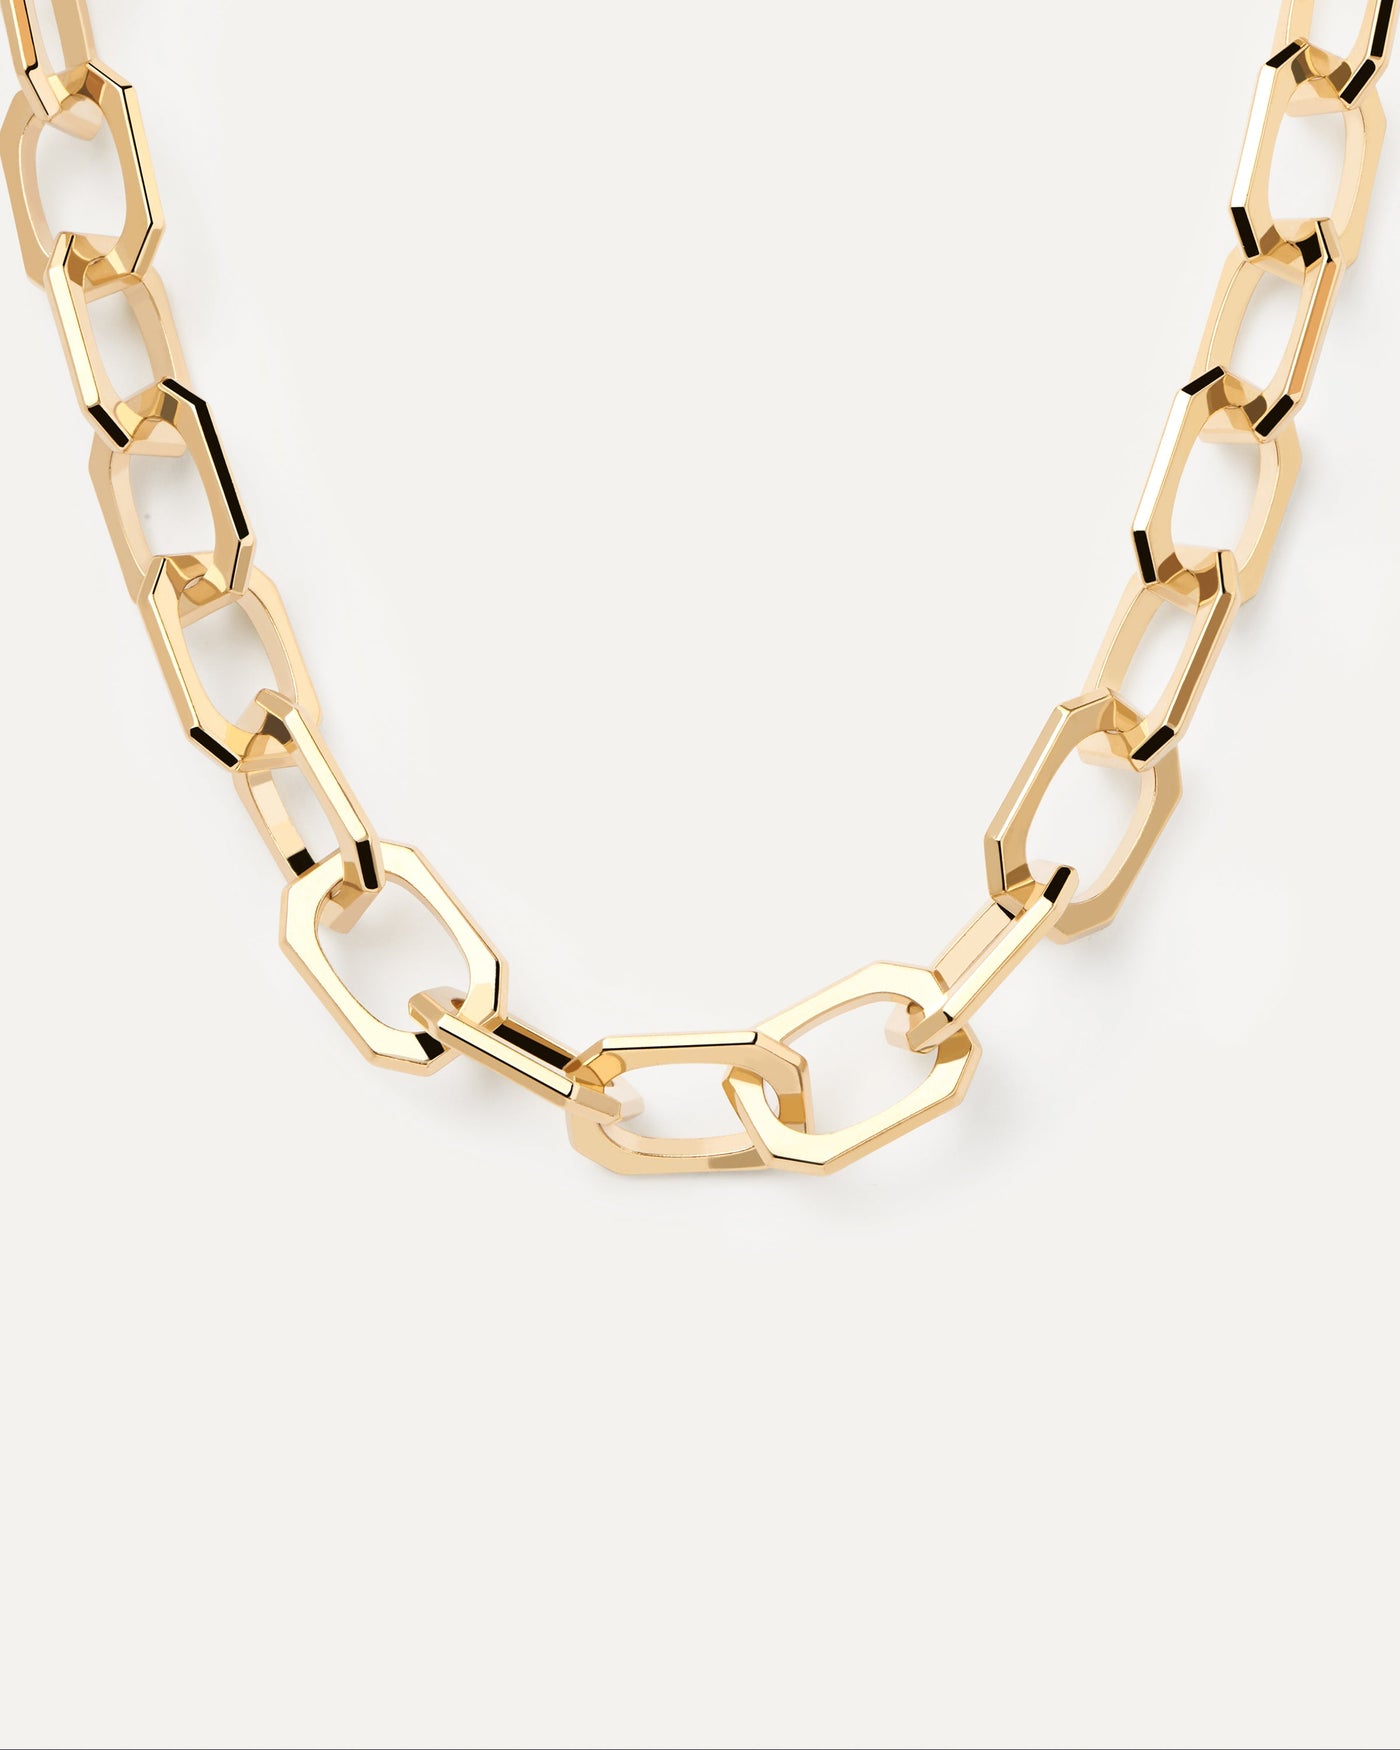 Large Signature Halskette. Kabelketten -Halskette mit großen oktogonalen Verbindungen in 18 Karat Goldbeschichtung. Erhalten Sie die neuesten Produkte von PDPAOLA. Geben Sie Ihre Bestellung sicher auf und erhalten Sie diesen Bestseller.